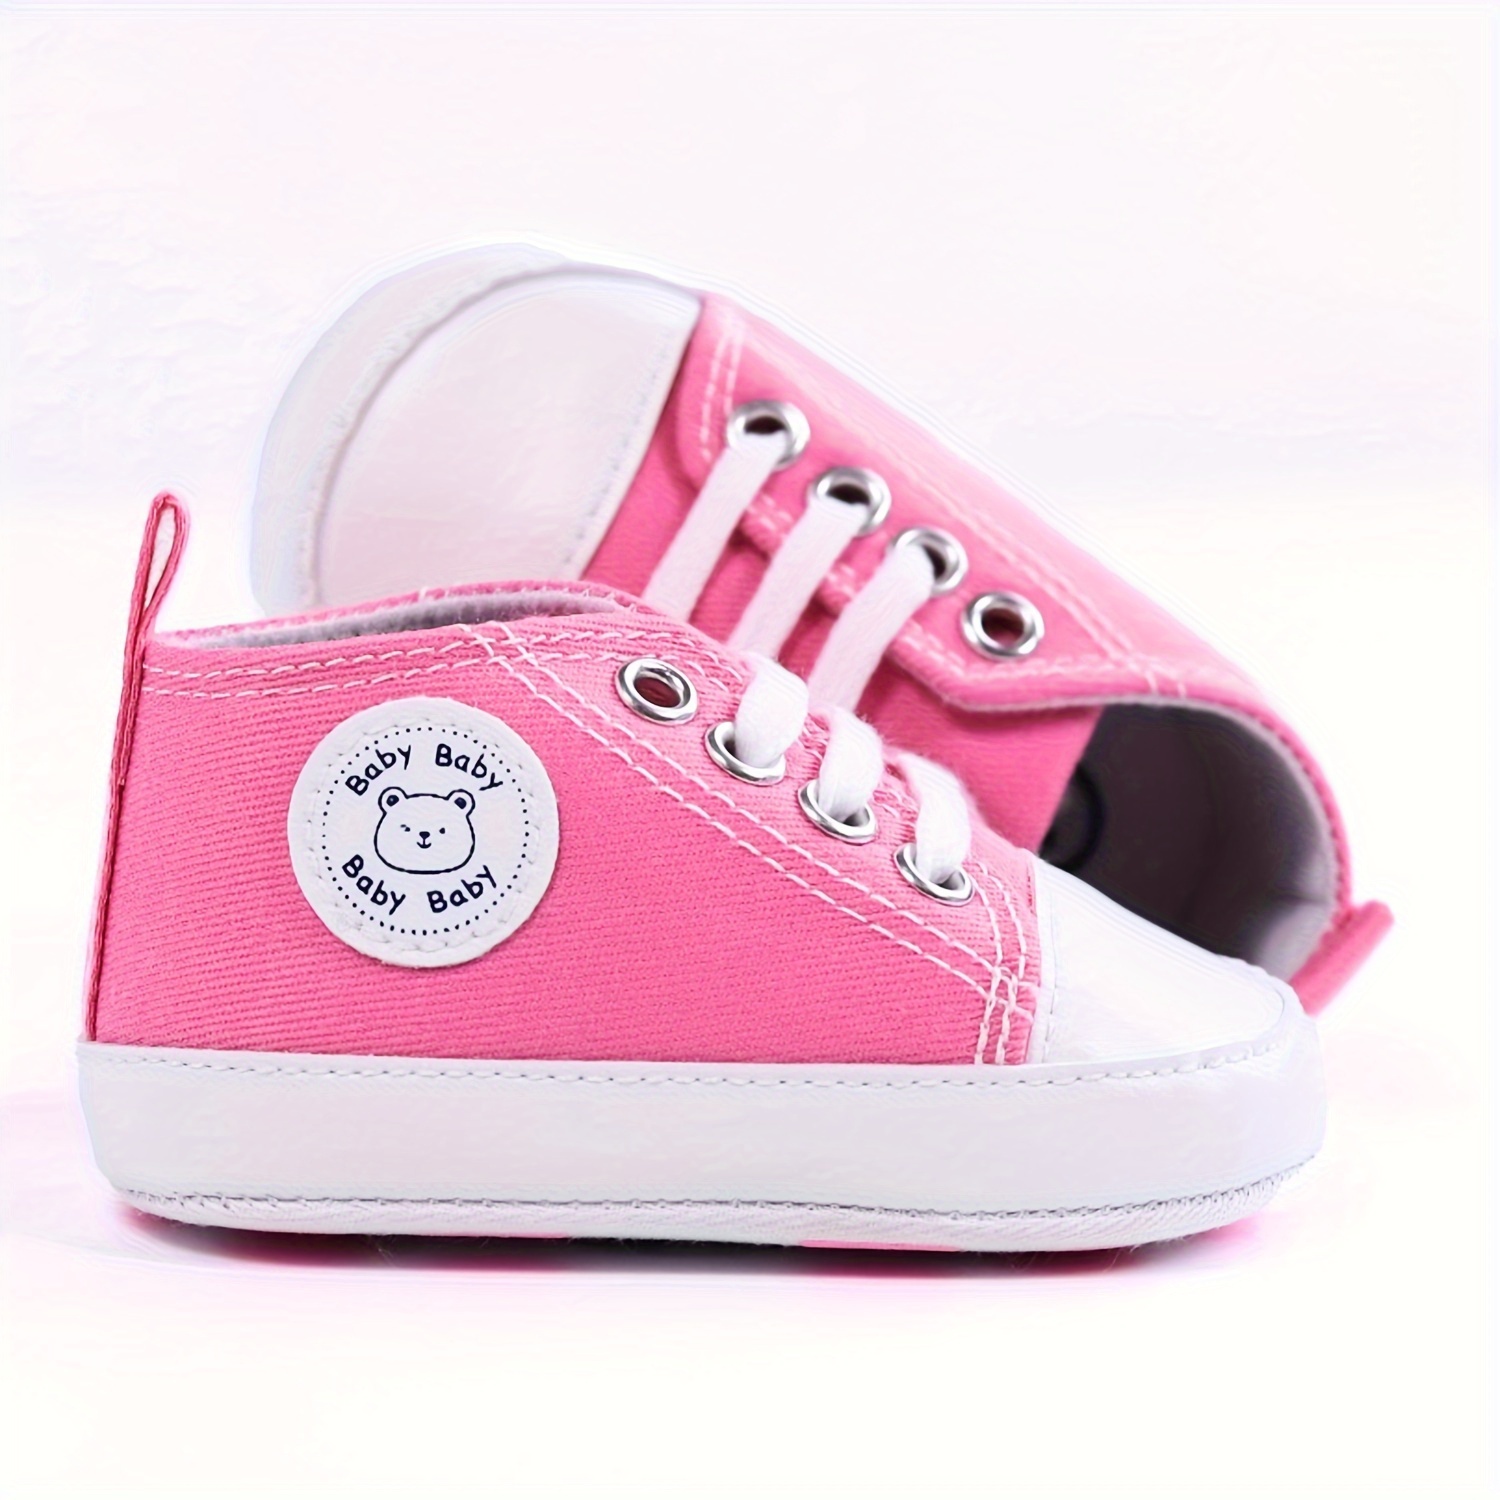 Redú! on Instagram: Las más hermosas zapatillas para bebé 💛 💫Talla 21-23  💫Acogedoras y cómodas 💫 Antideslizantes y duraderas . #zapatos #bebe #niña  #zapatillas